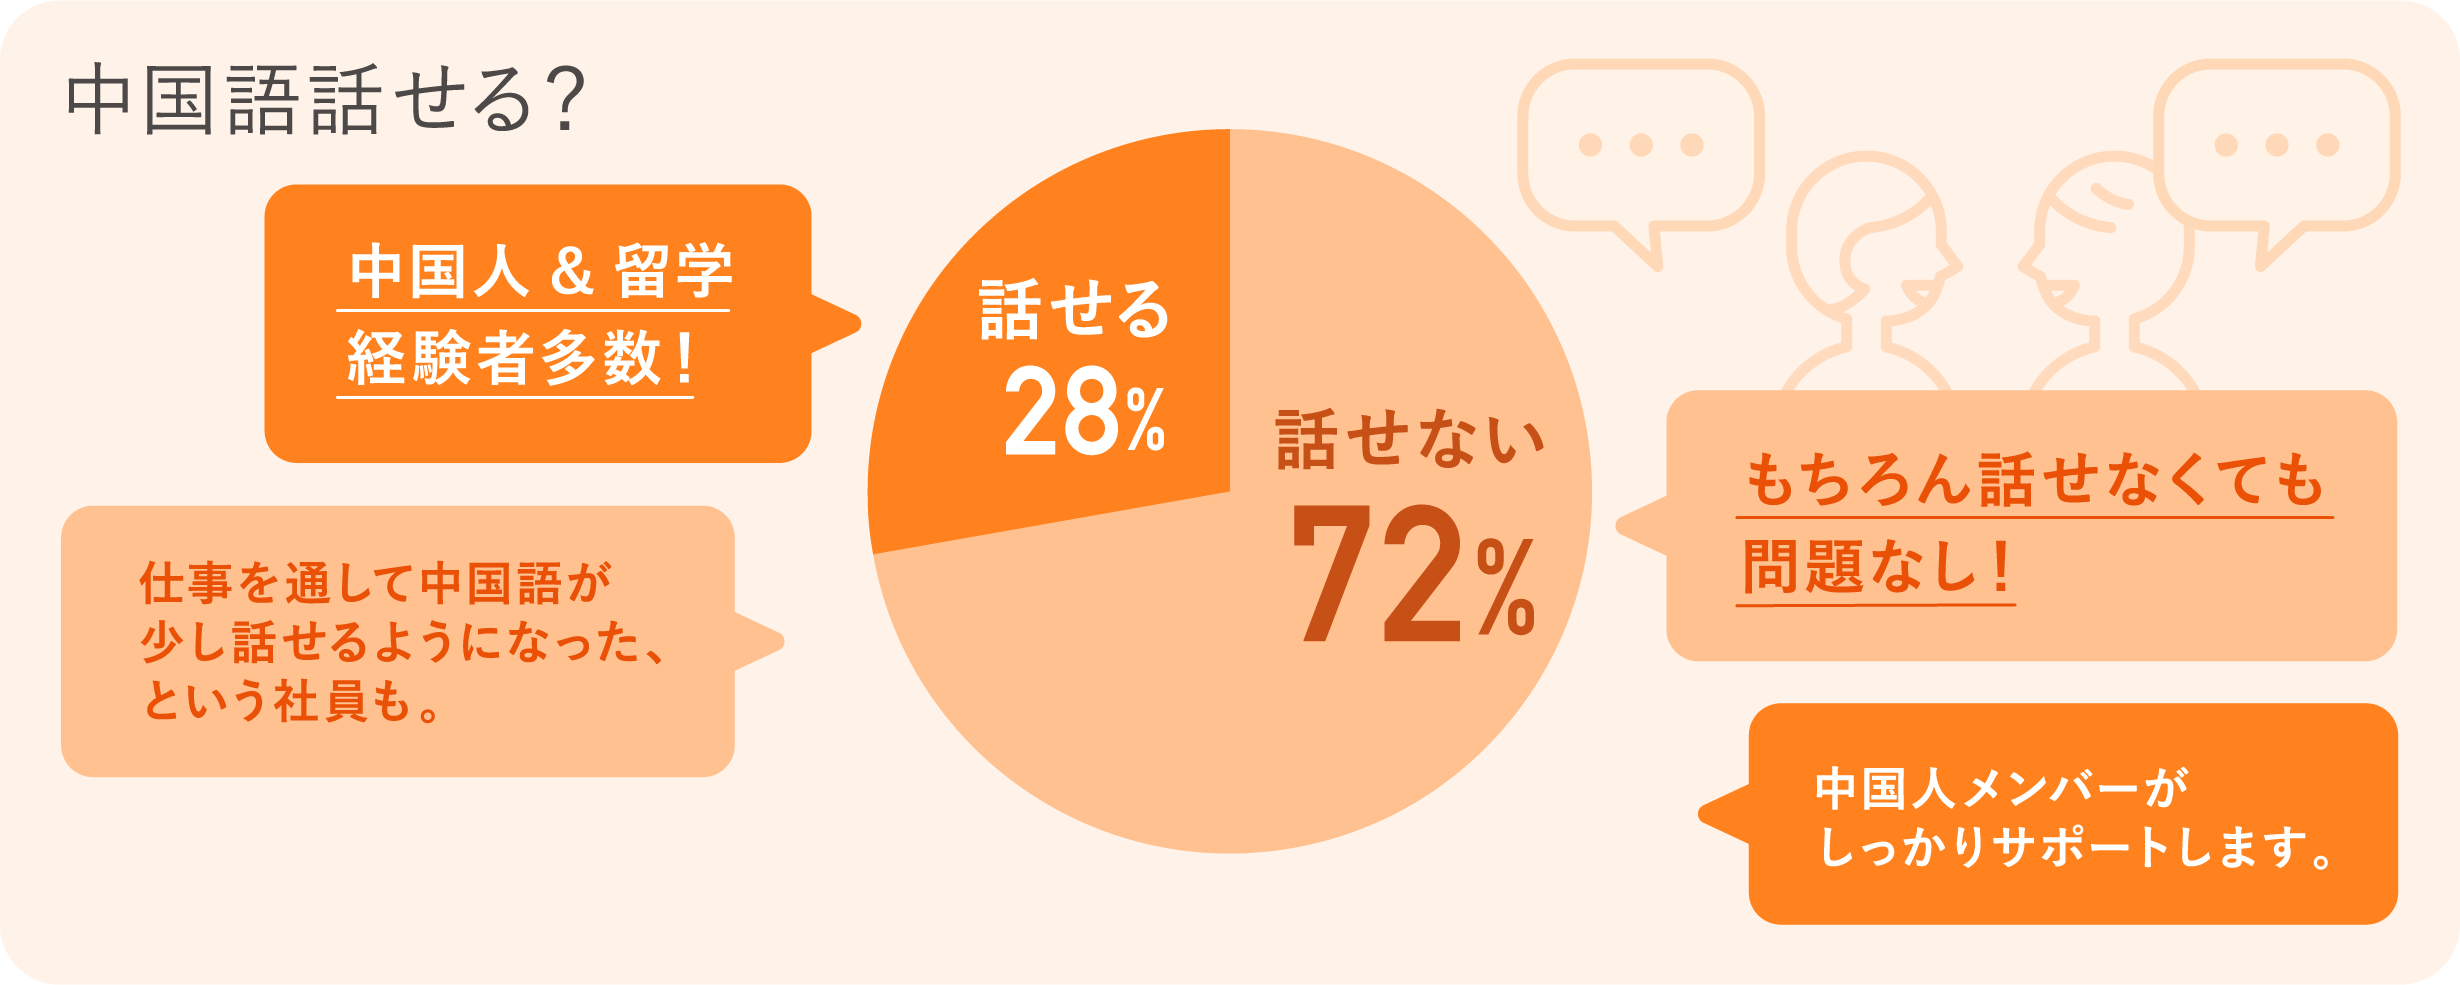 中国語話せる？　話せない：72％　話せる：
      28％　もちろん話せなくても問題なし！　中国人メンバーがしっかりサポートします。　仕事を通して中国語が少し話せるようになった、という社員も。